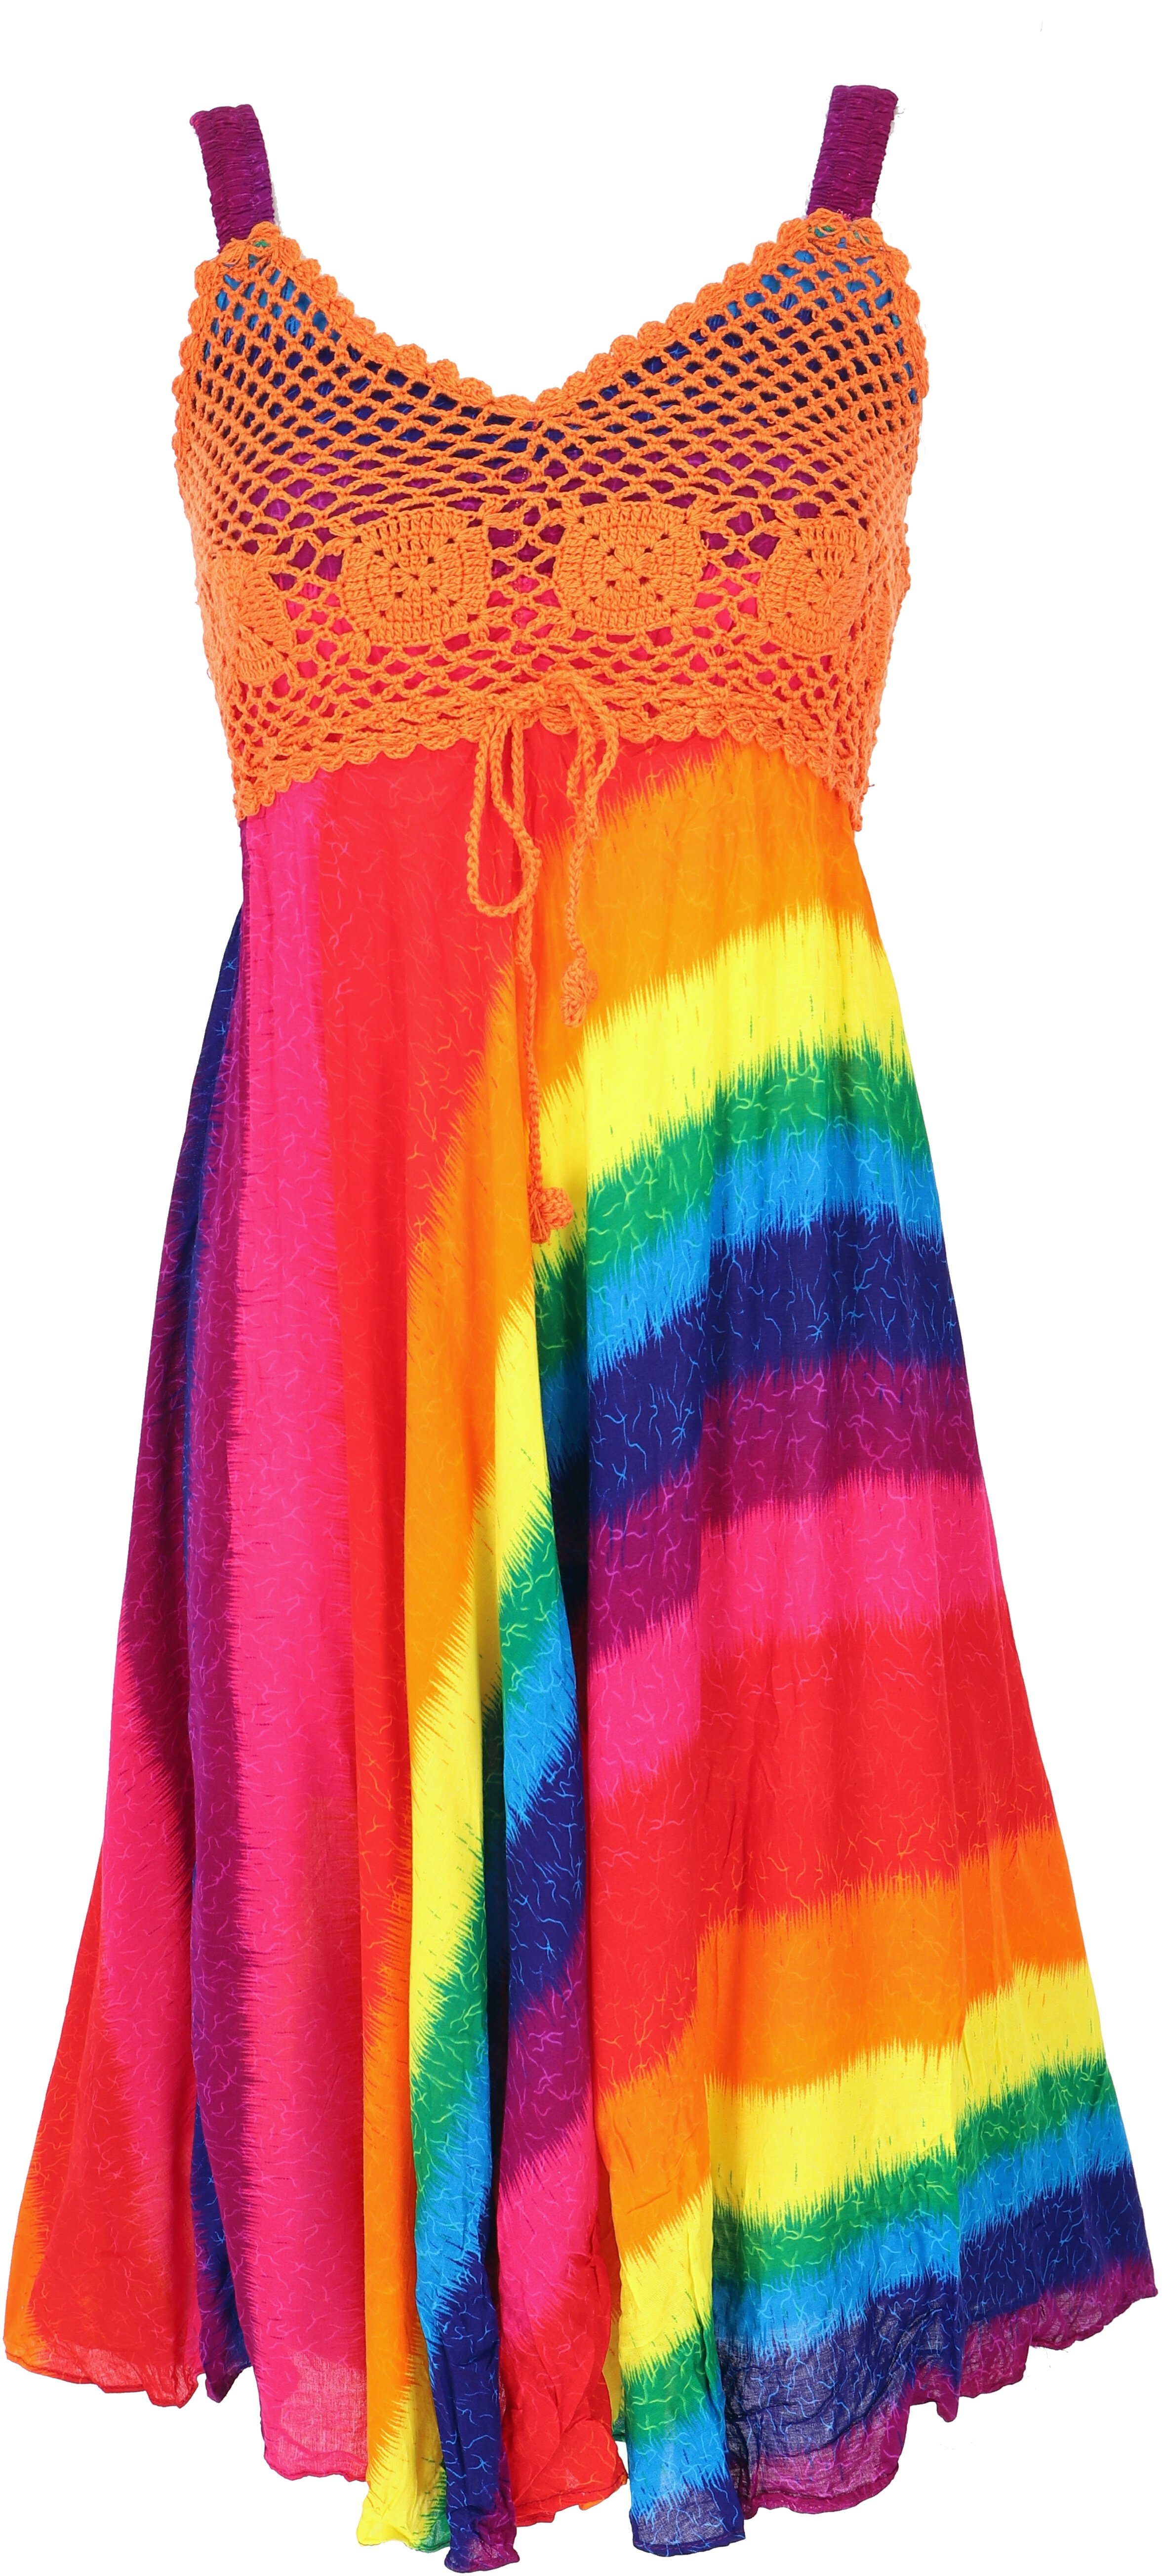 Guru-Shop Midikleid Boho regenbogen/orange Krinkelkleid Bekleidung -.. Minikleid, Sommerkleid, alternative